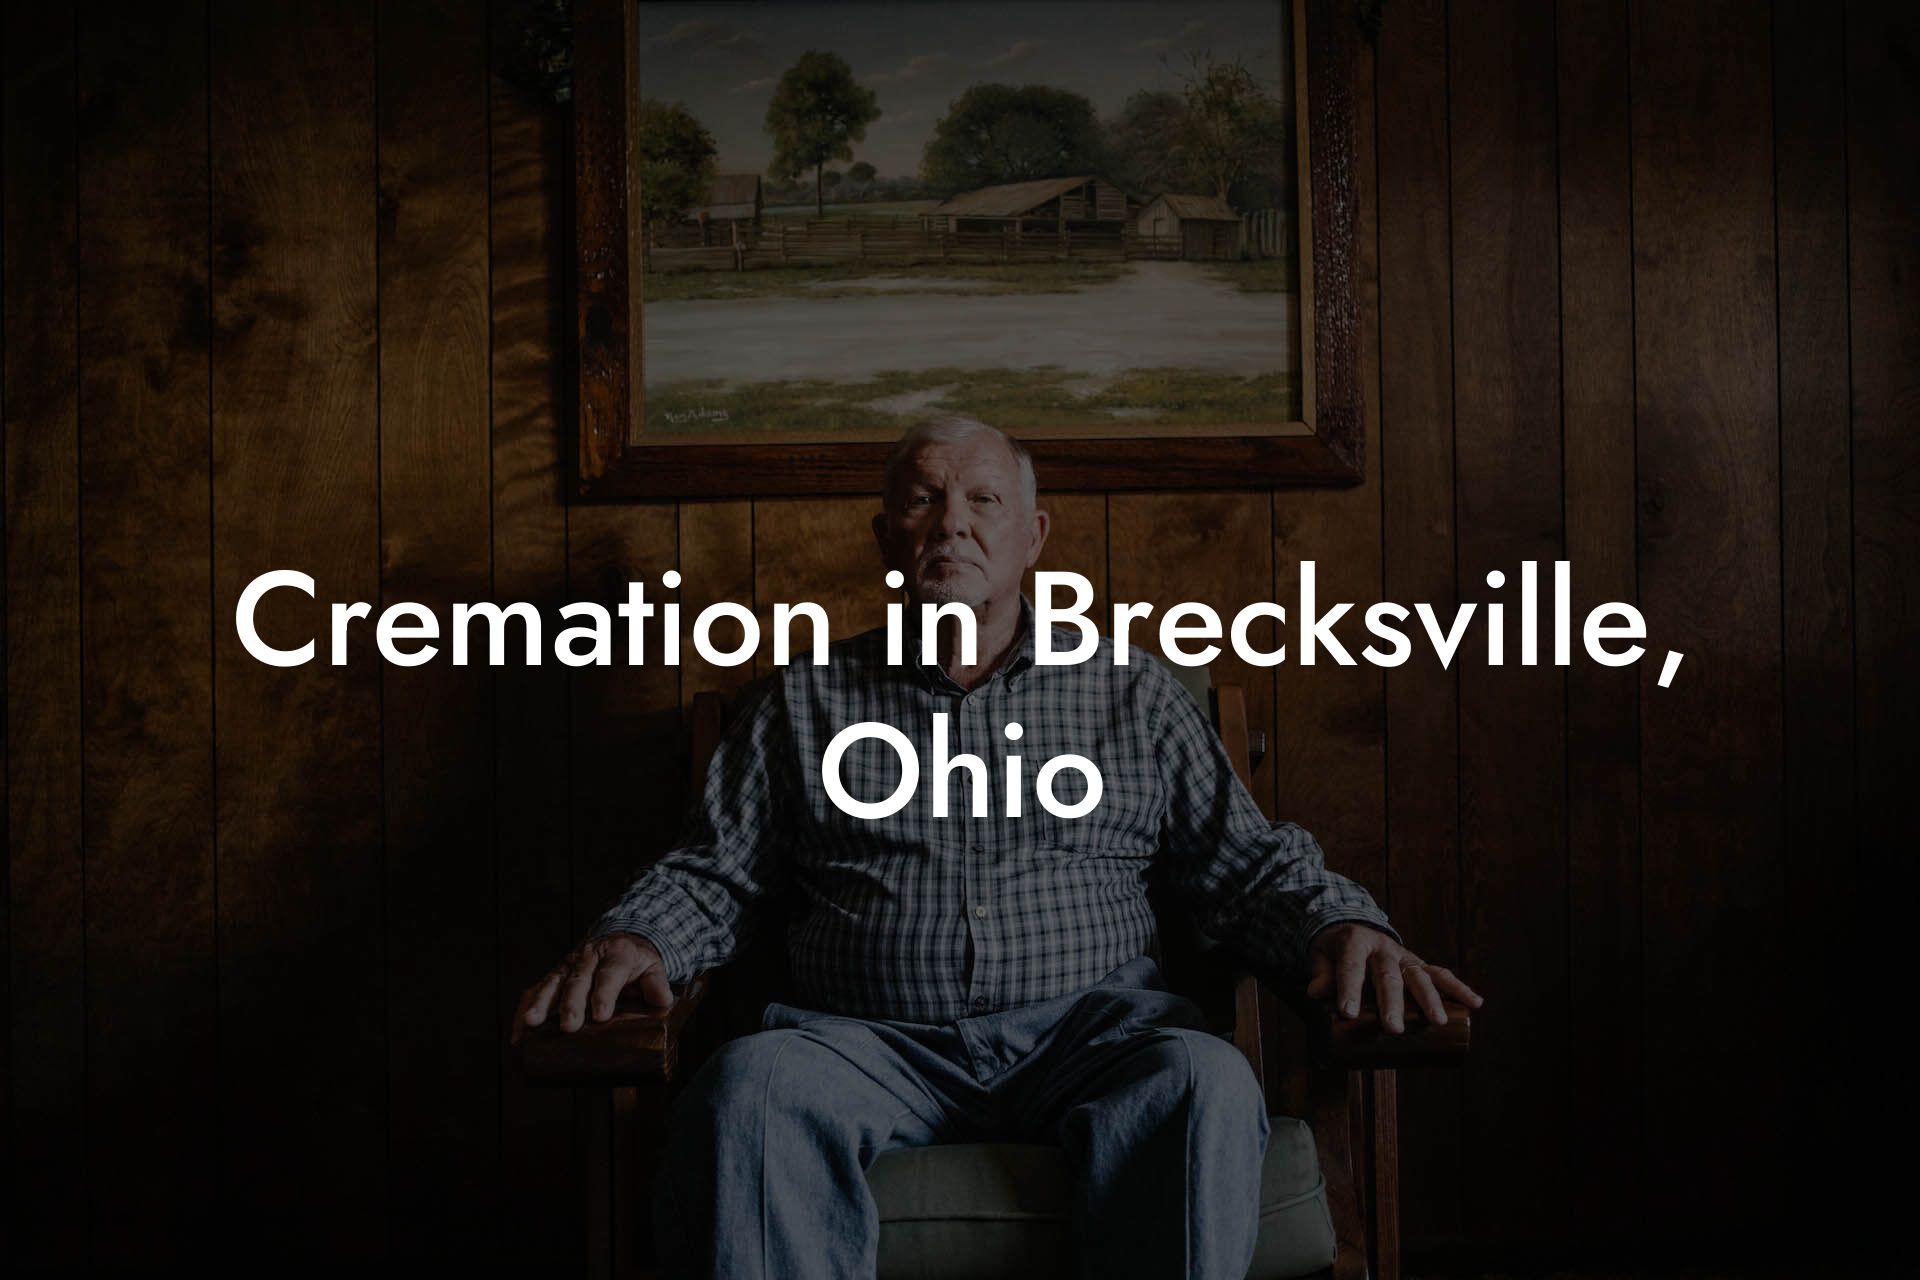 Cremation in Brecksville, Ohio